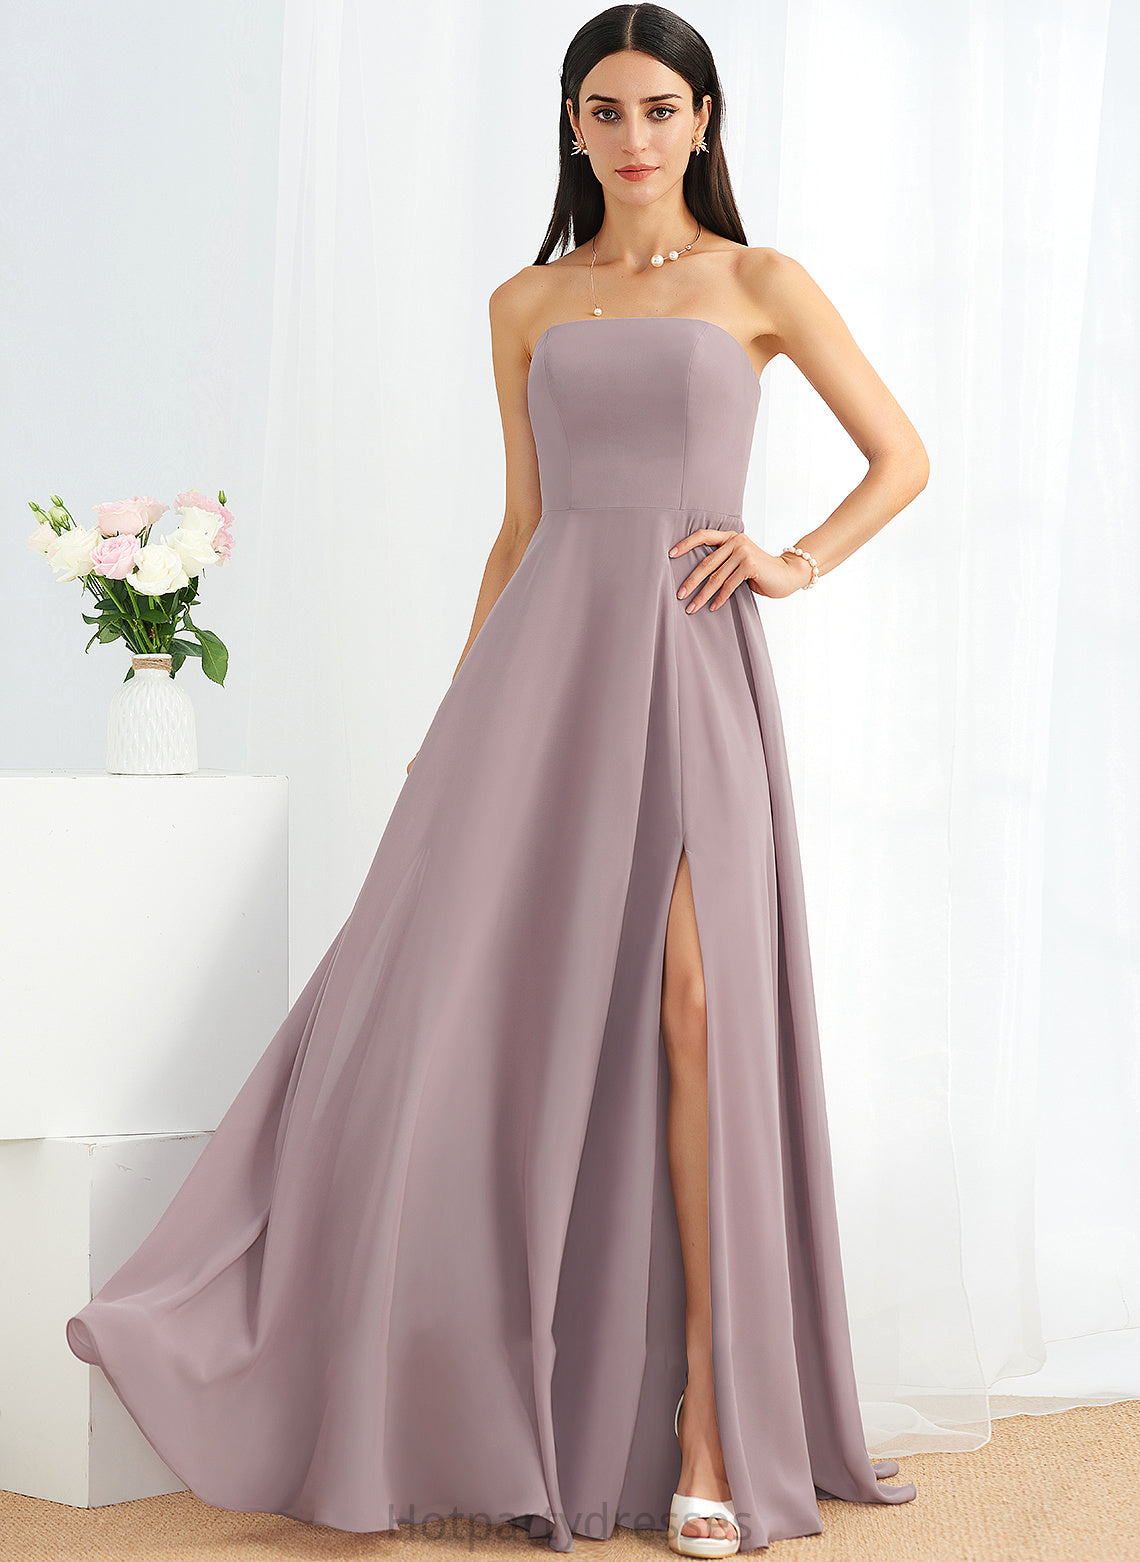 Silhouette Length Strapless Floor-Length Embellishment SplitFront Neckline Fabric A-Line Cecelia A-Line/Princess Tea Length Bridesmaid Dresses